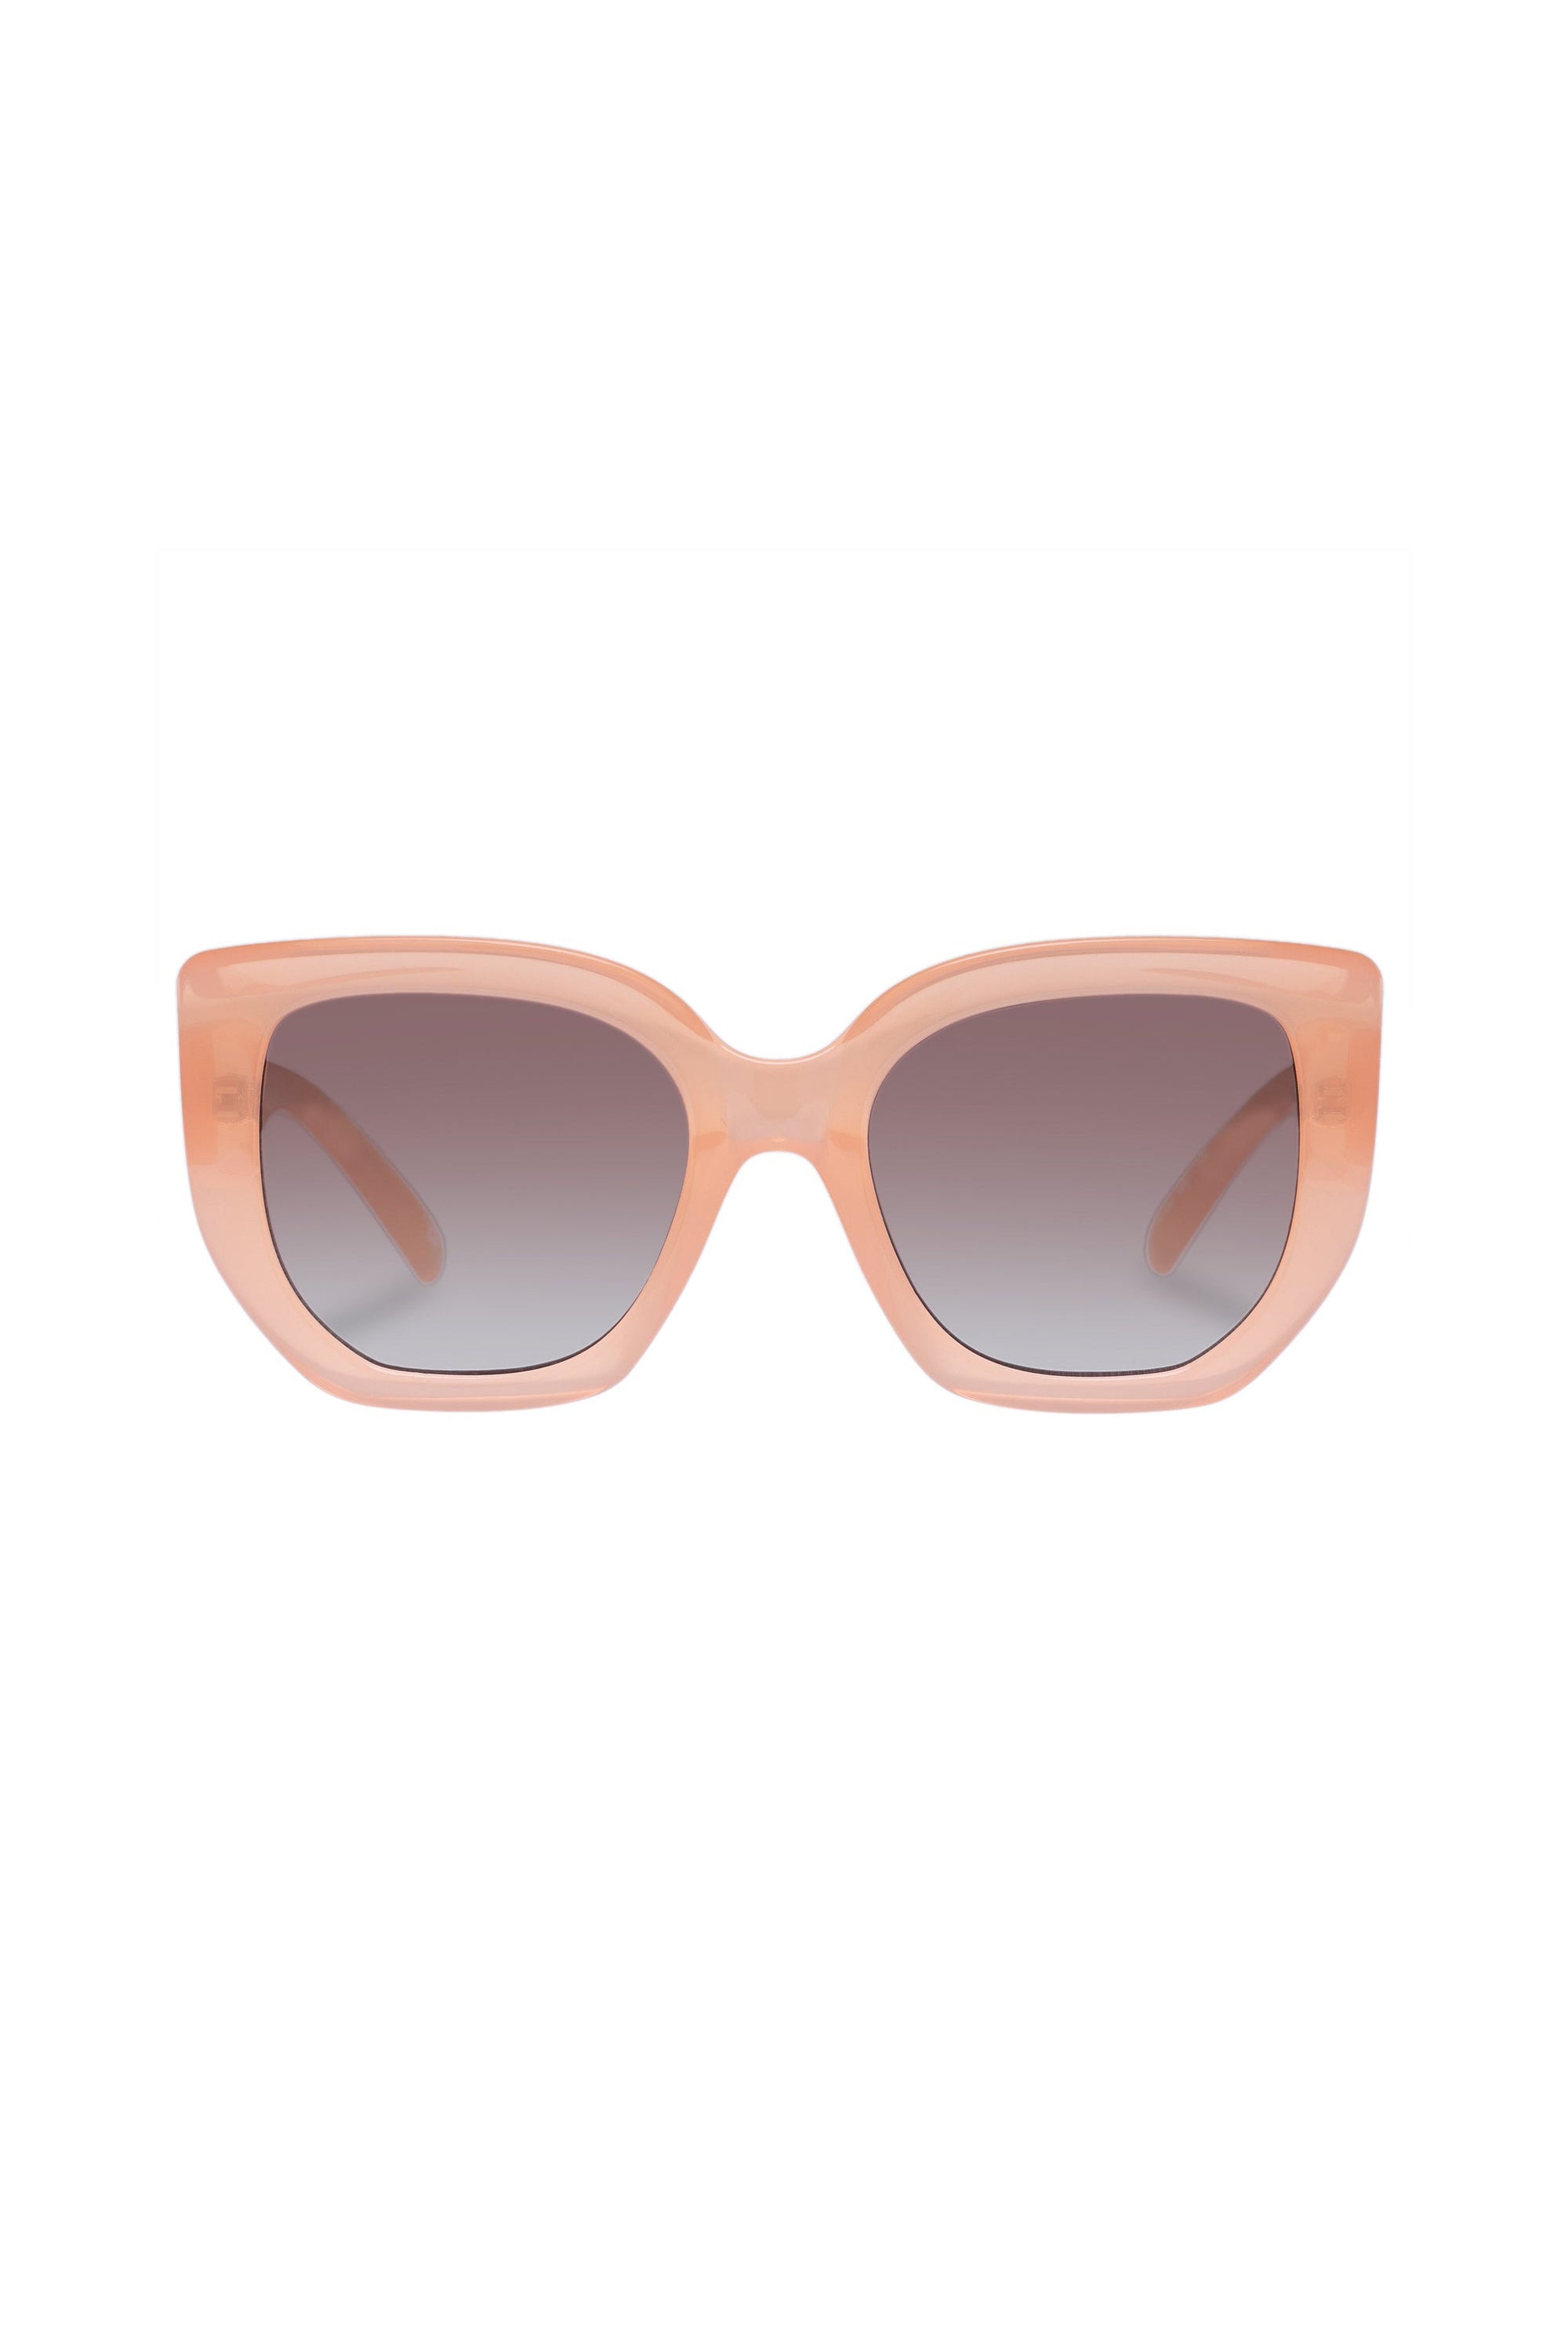 Le Specs Euphoria Sunglasses - Mimosa Pink - RUM Amsterdam